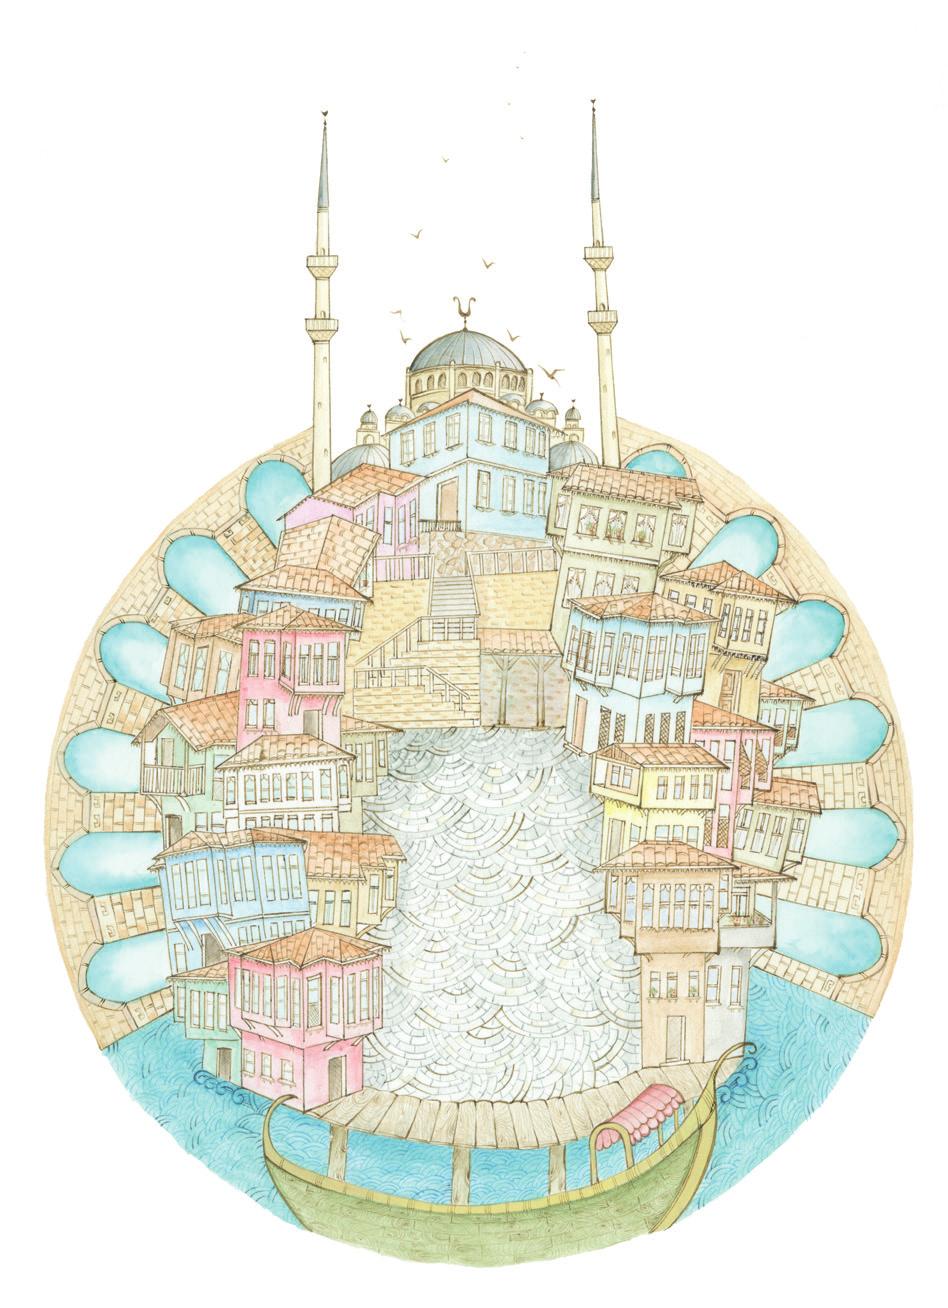 BEZ TORBA Fatih Sultan Mehmet tarafından fetihten hemen sonra Eyyüb el-ensari nin türbesi yaptırılmış, sonrasında yakınına cami, medrese, imaret ve hamam gibi yapıların eklenmesiyle